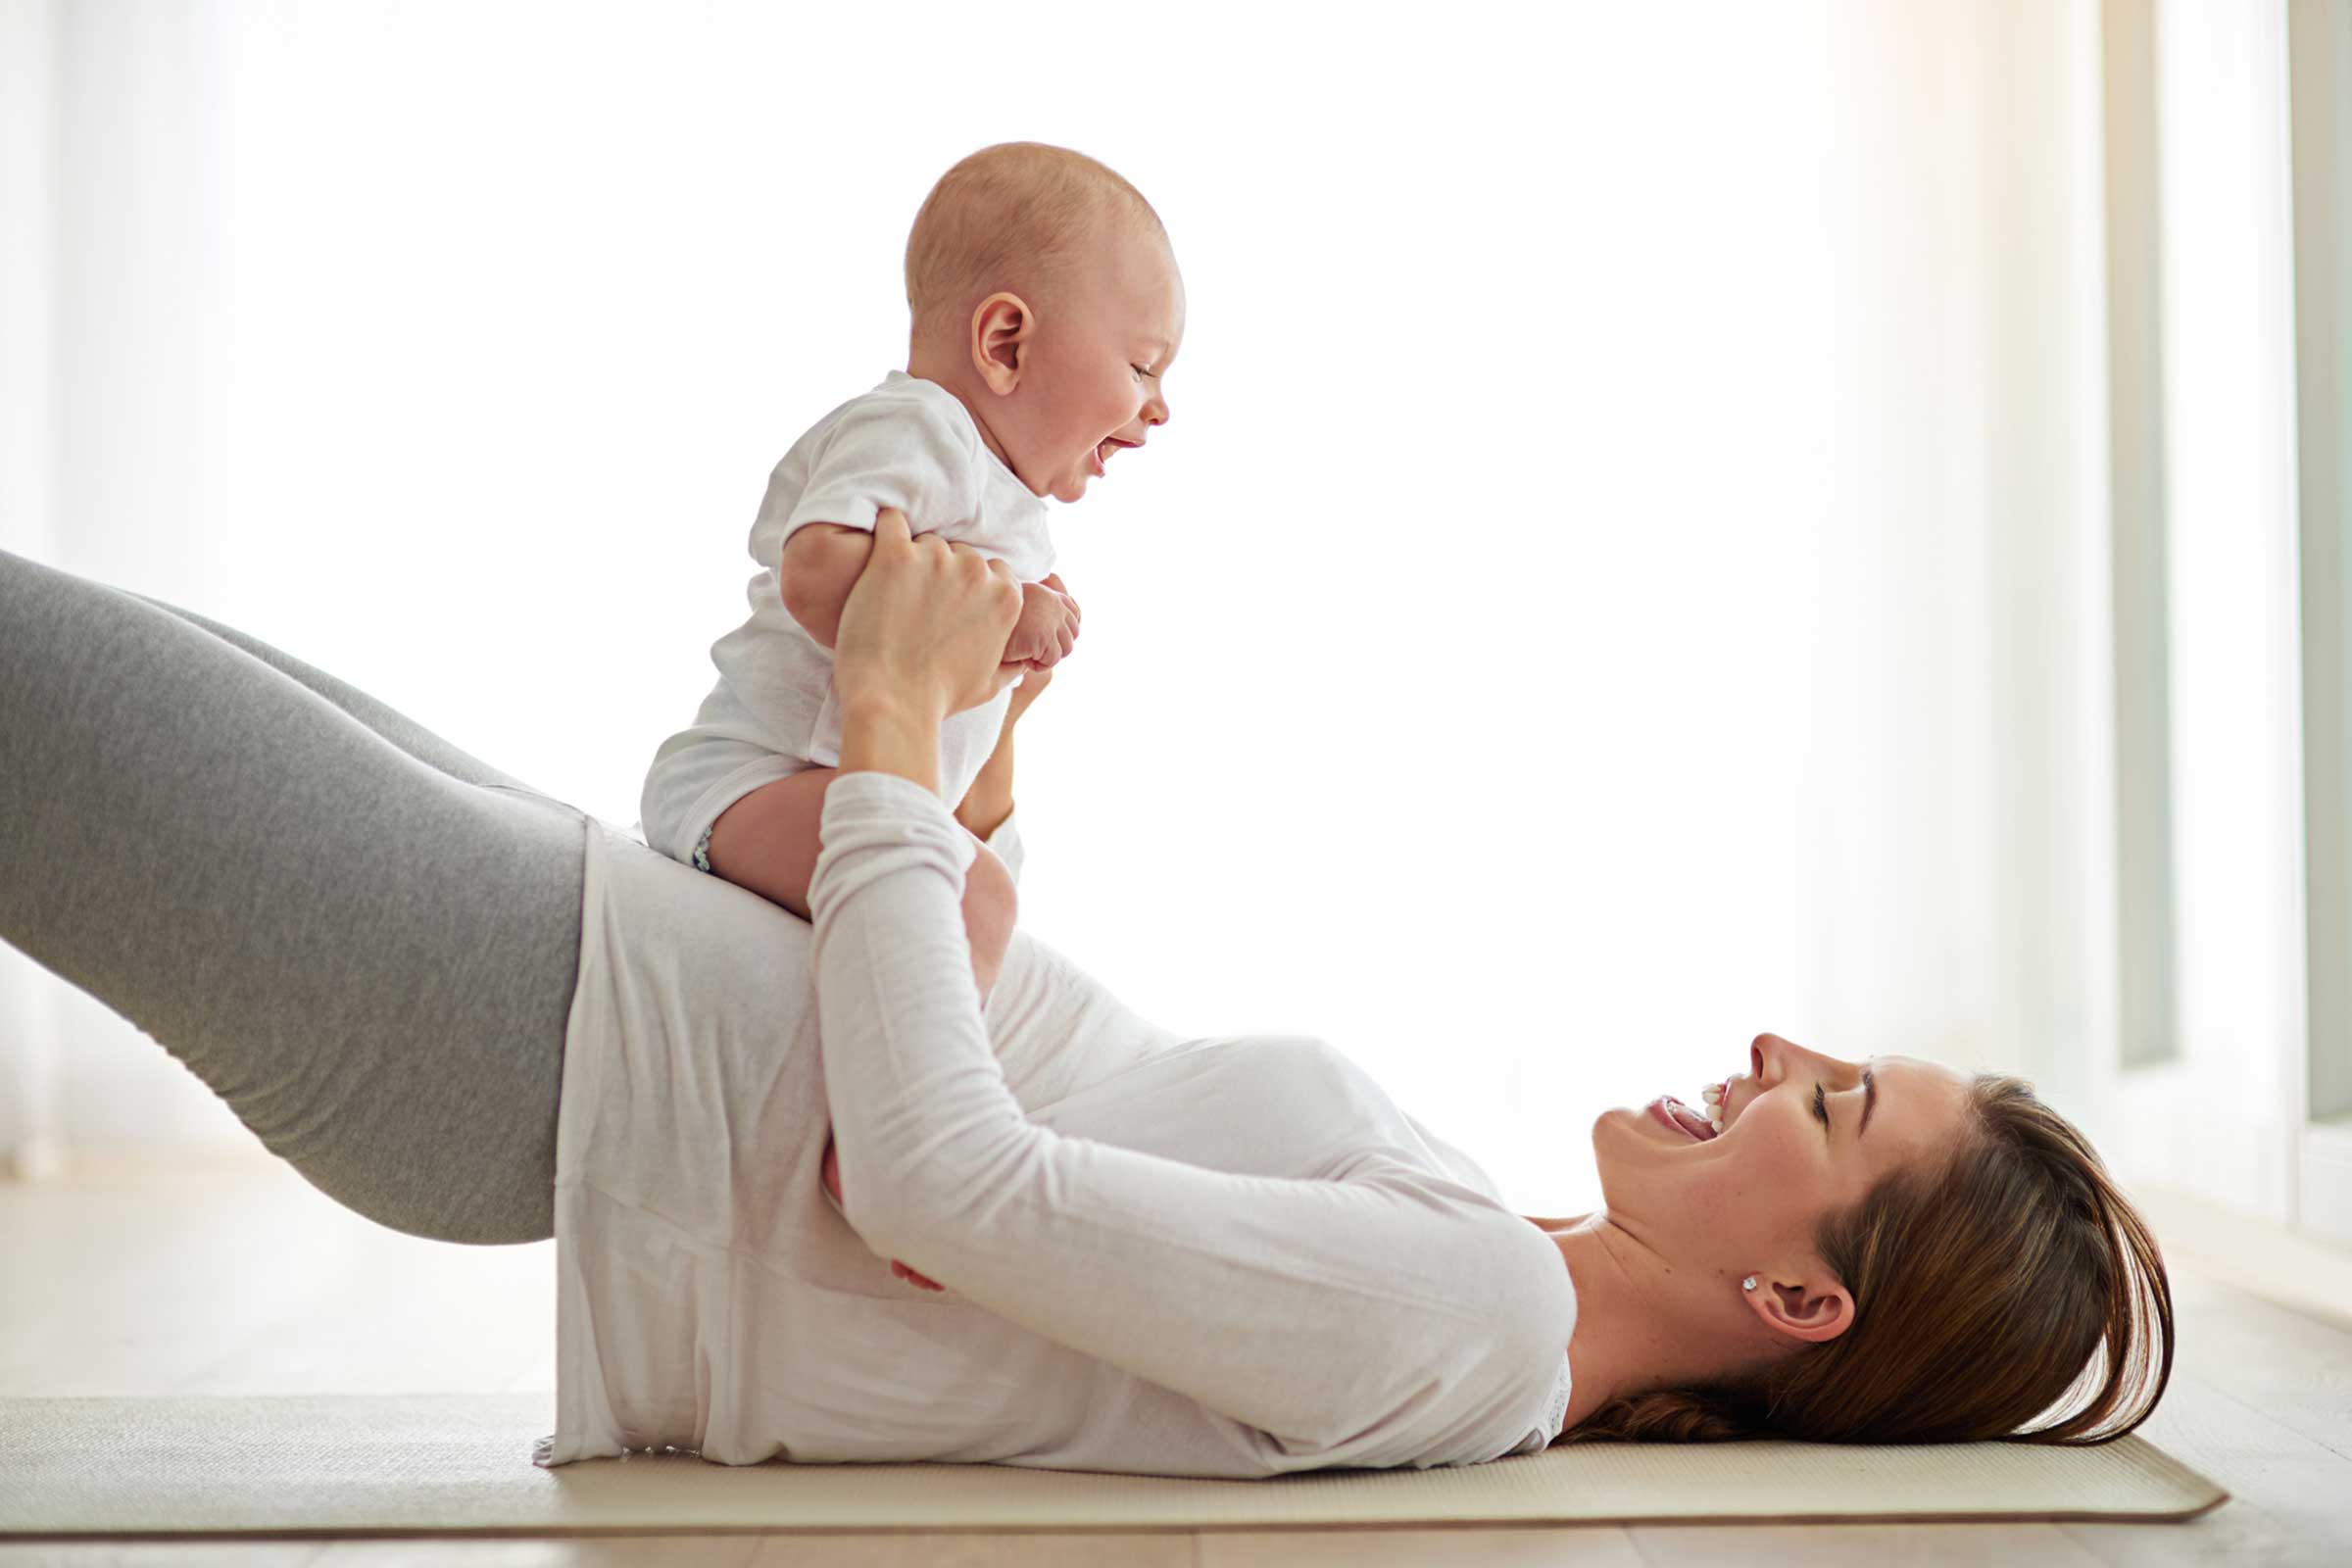 Выкладывать на животик после кормления. Бейби йога. Молодая мама после родов. Консультации молодой маме с ребенком. Бэби йога от 24 месяцев.